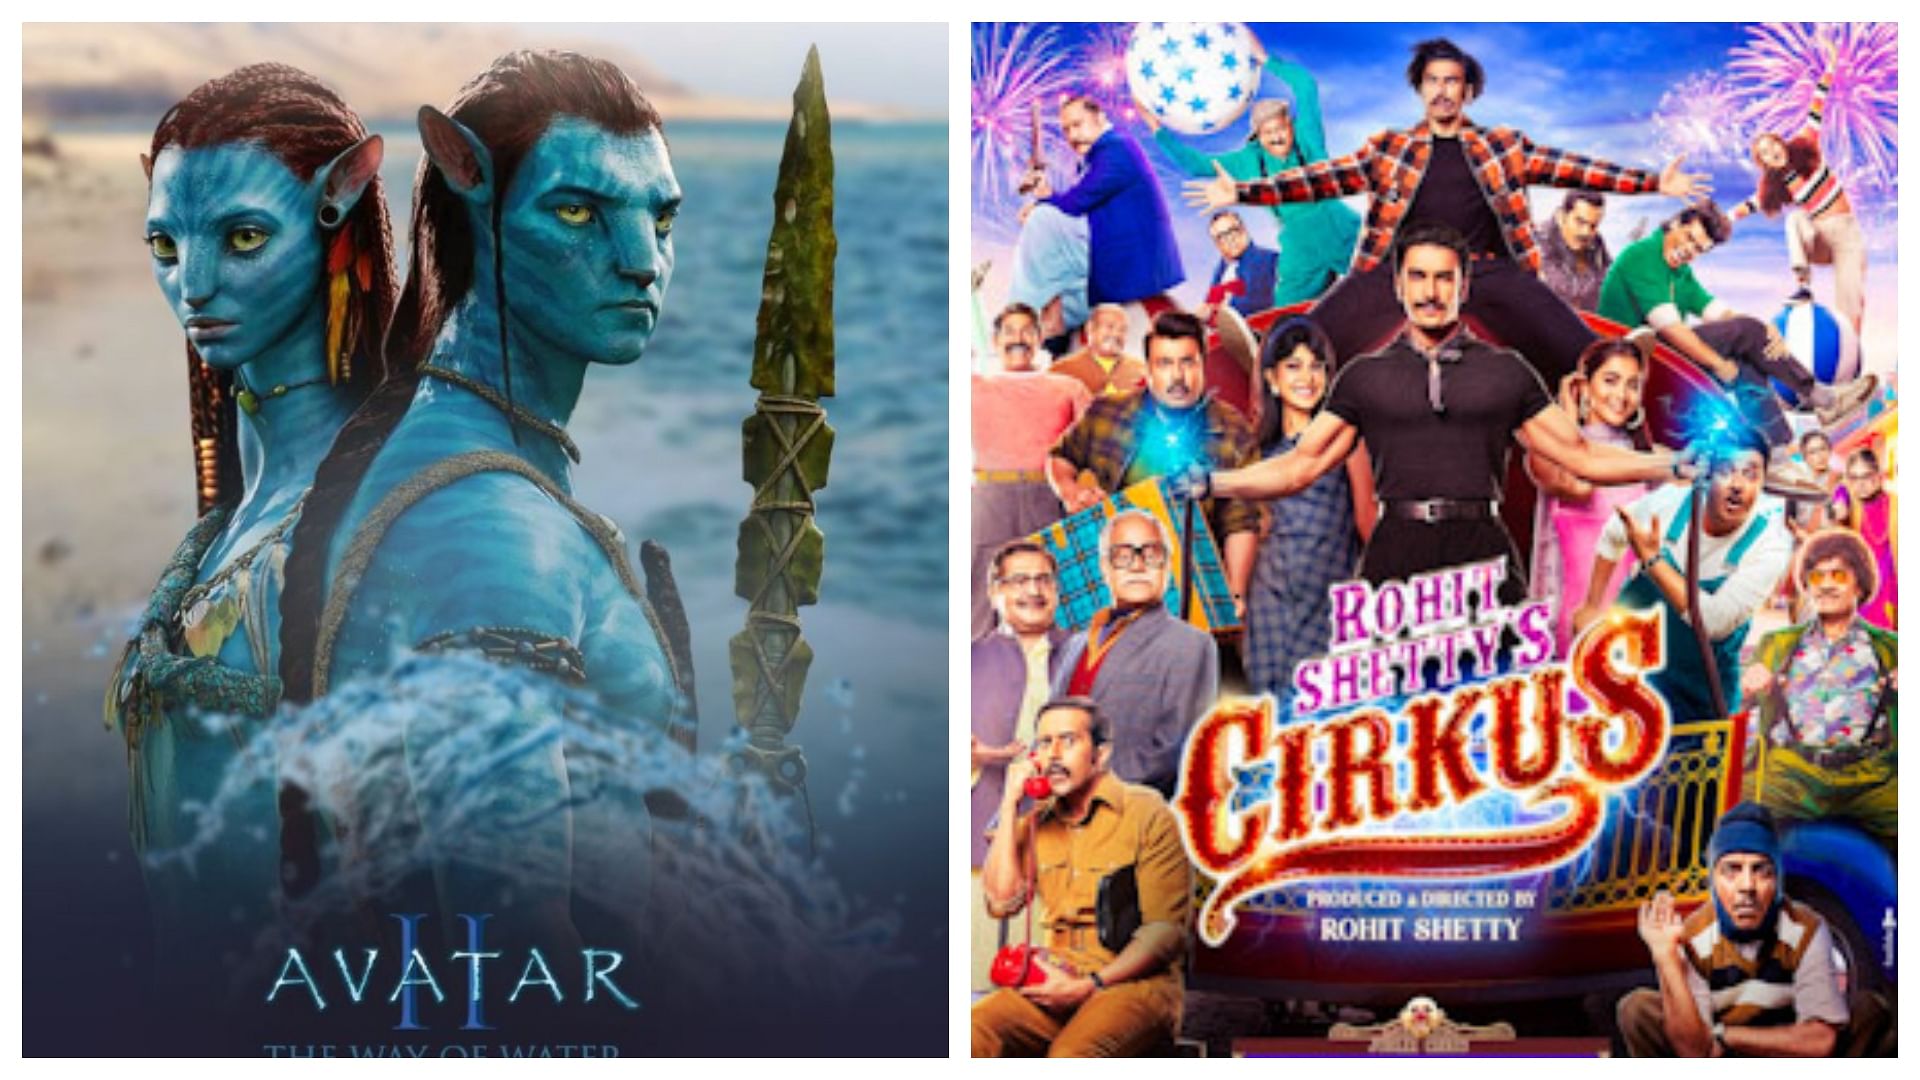 Avatar 2 Vs Cirkus:अवतार 2 के भारत में 200 करोड़ पूरे, 'सर्कस' के पहले दिन से ज्यादा किया आठवें दिन कलेक्शन - Avatar The Way Of Water Week 1 Day 7 Box